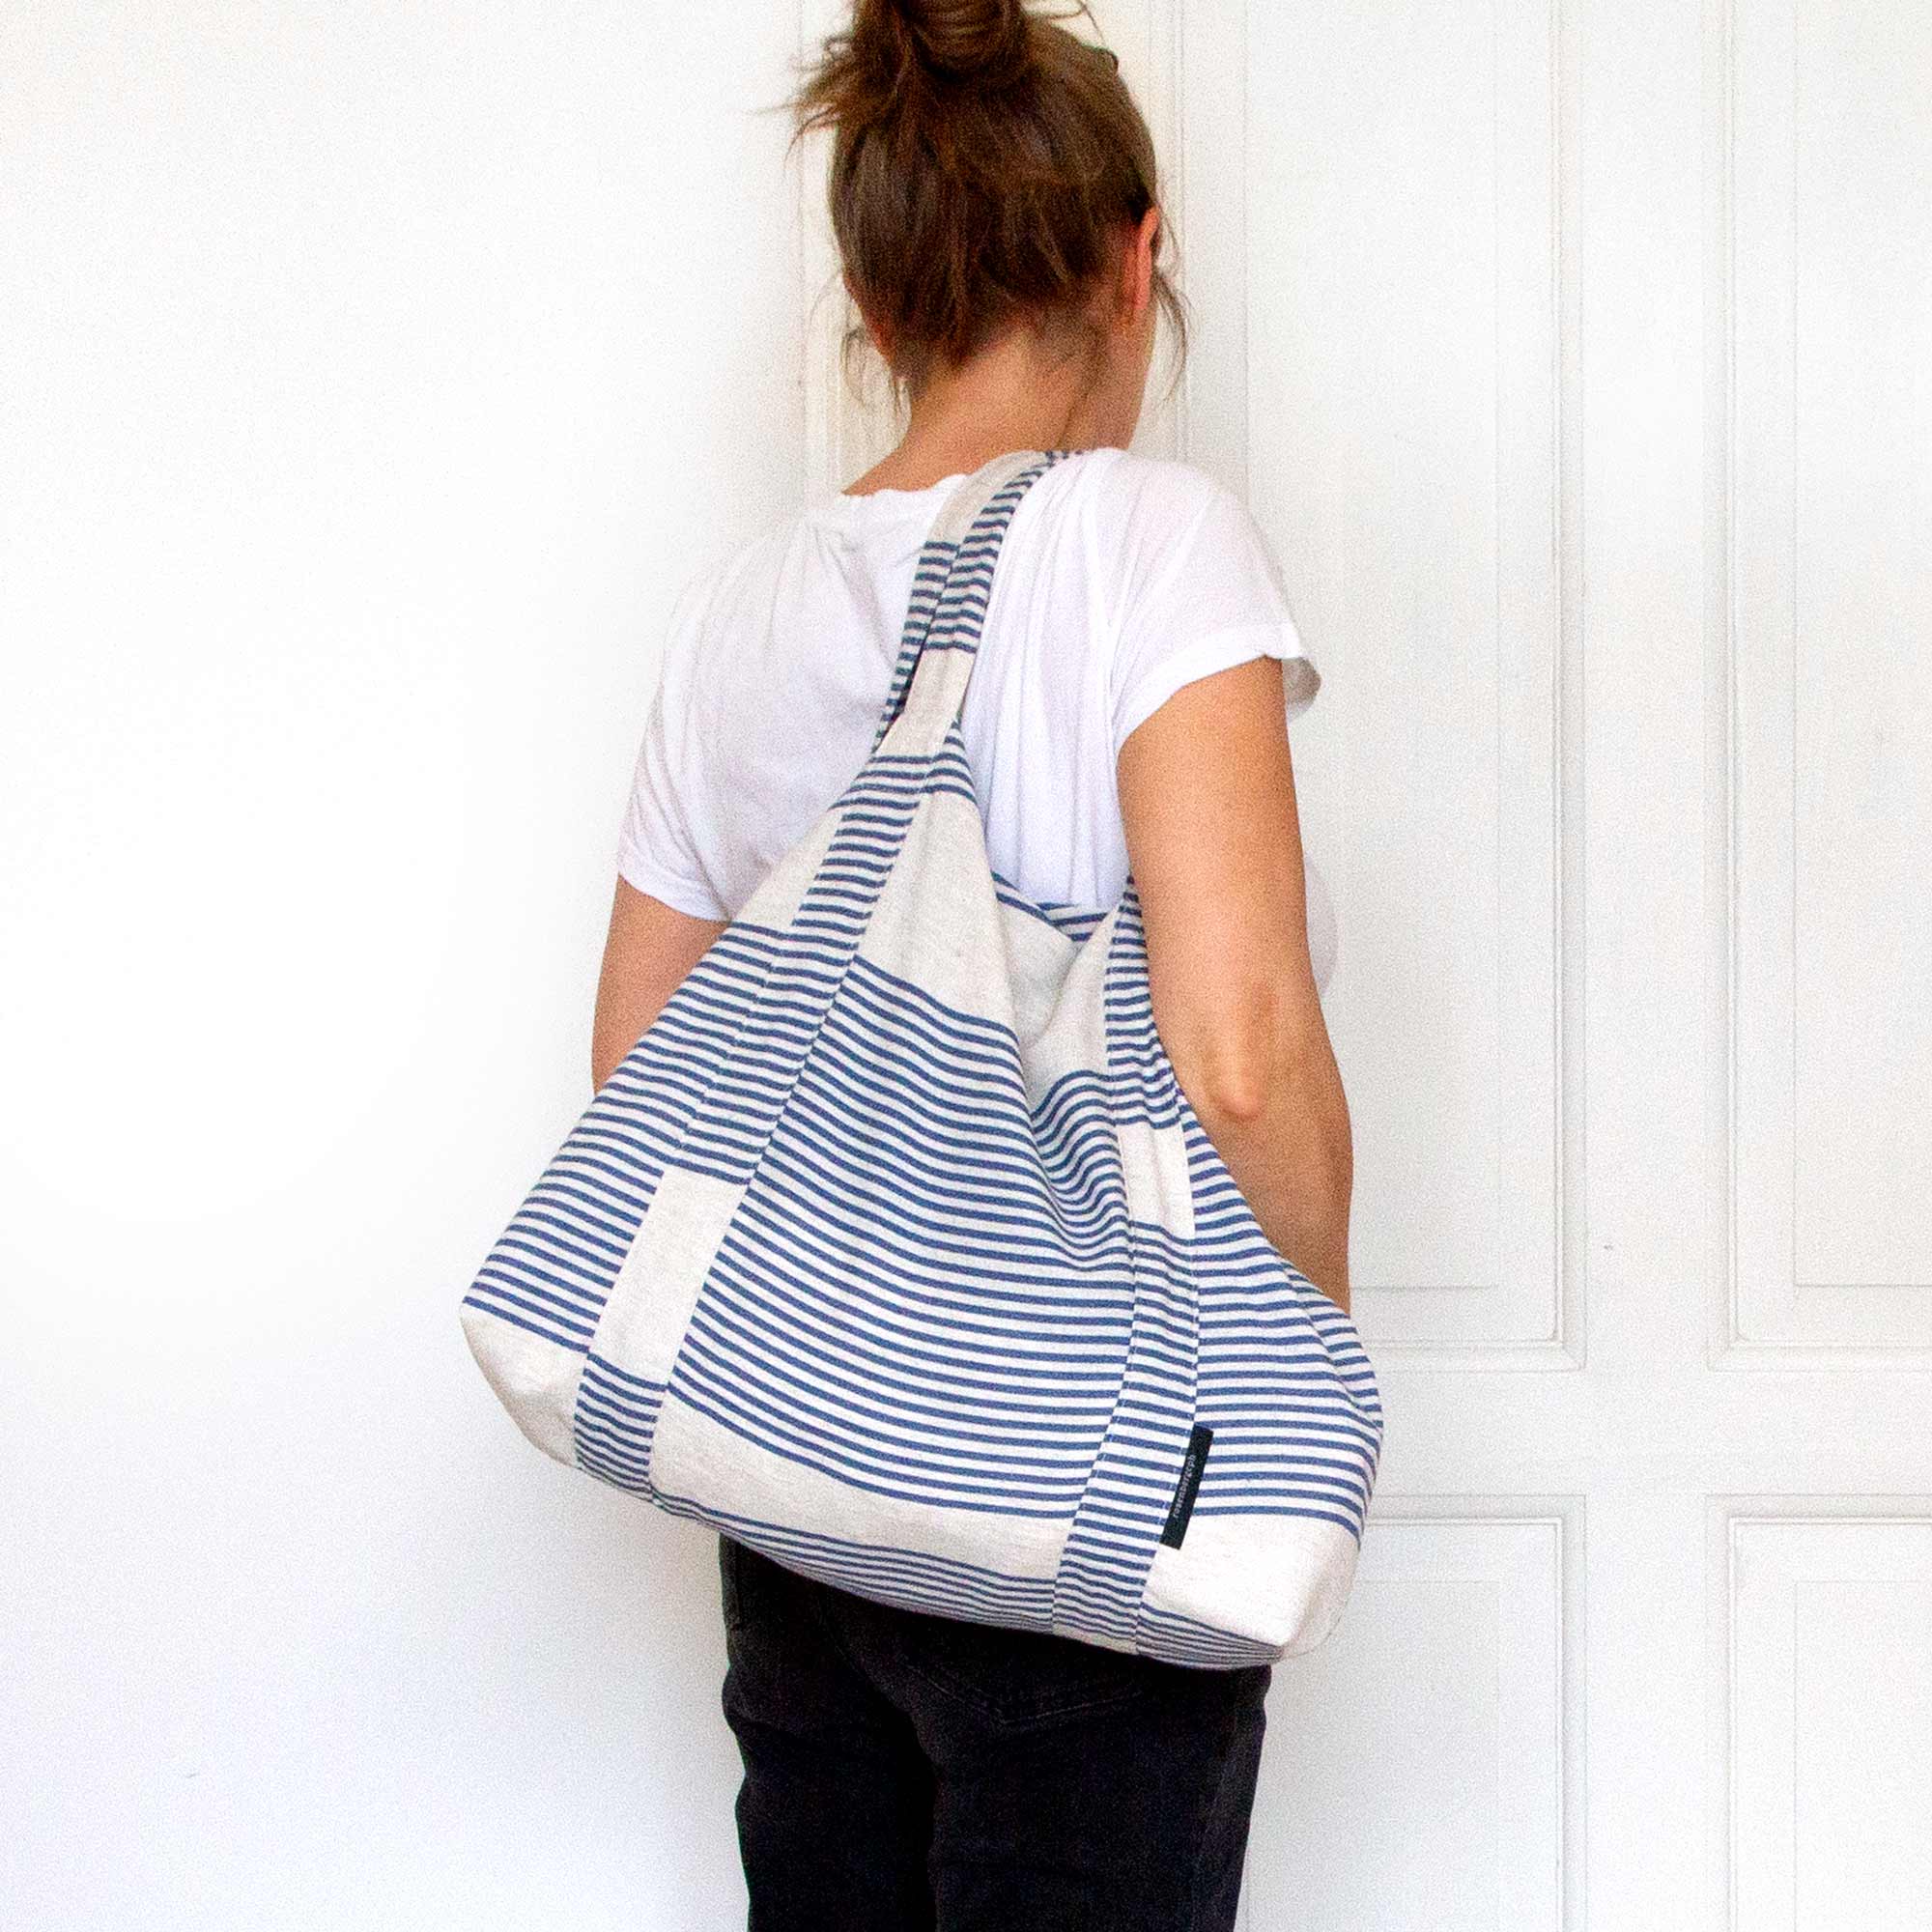 River blue linen bag, design Anne Rosenberg, RosenbergCph